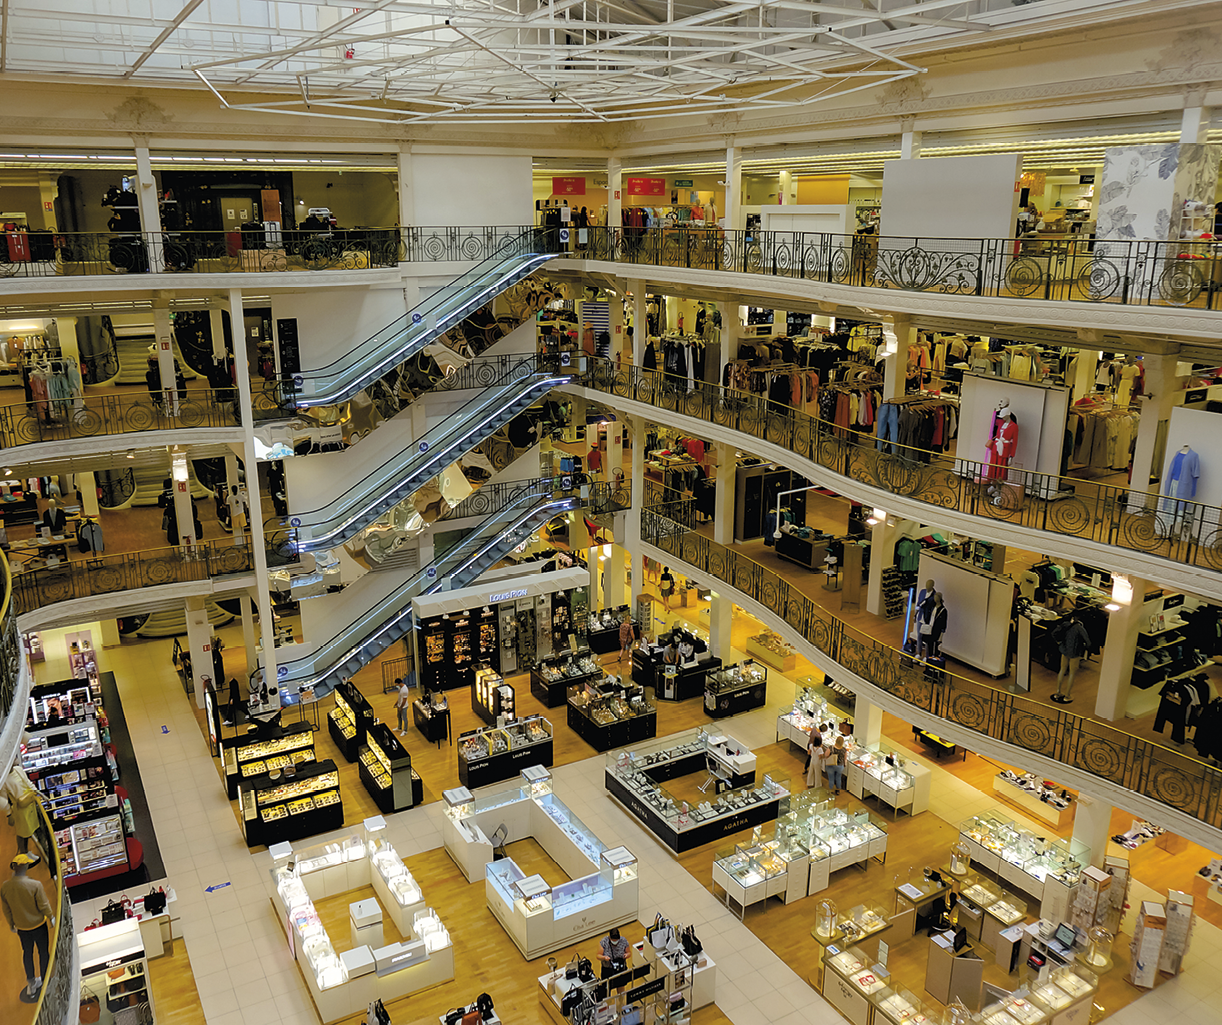 Fotografia. Interior de uma loja de departamentos com três andares, escadas rolantes, balcões com produtos no andar térreo, diversos manequins com roupas.